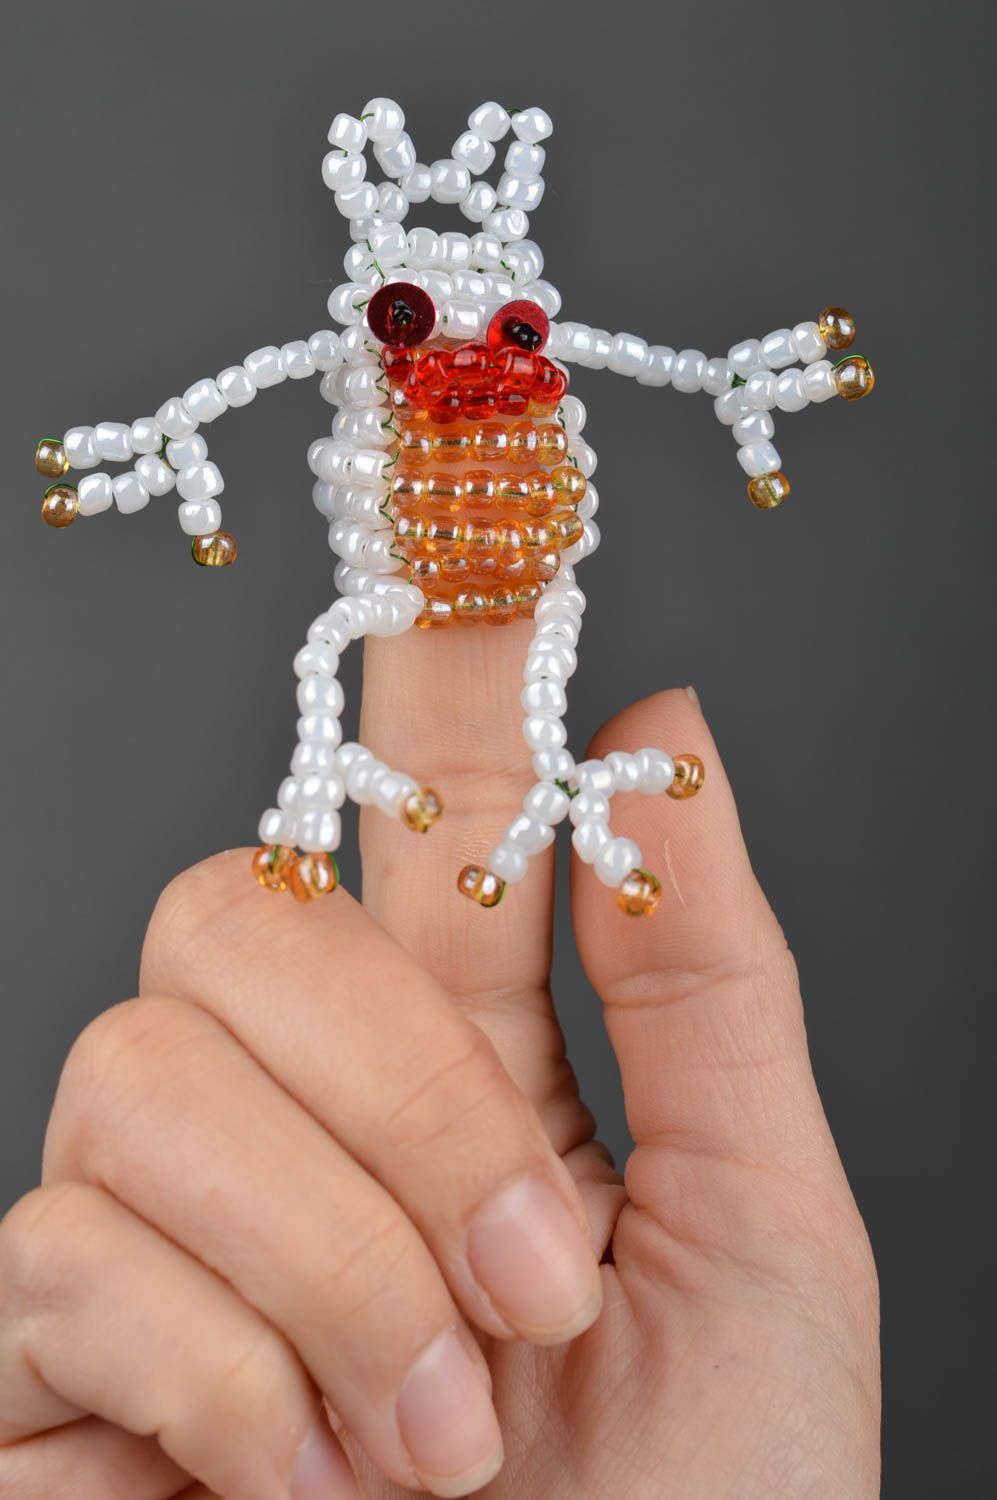 Пальчиковая игрушка из бисера ручной работы лягушка для кукольного театра фото 1